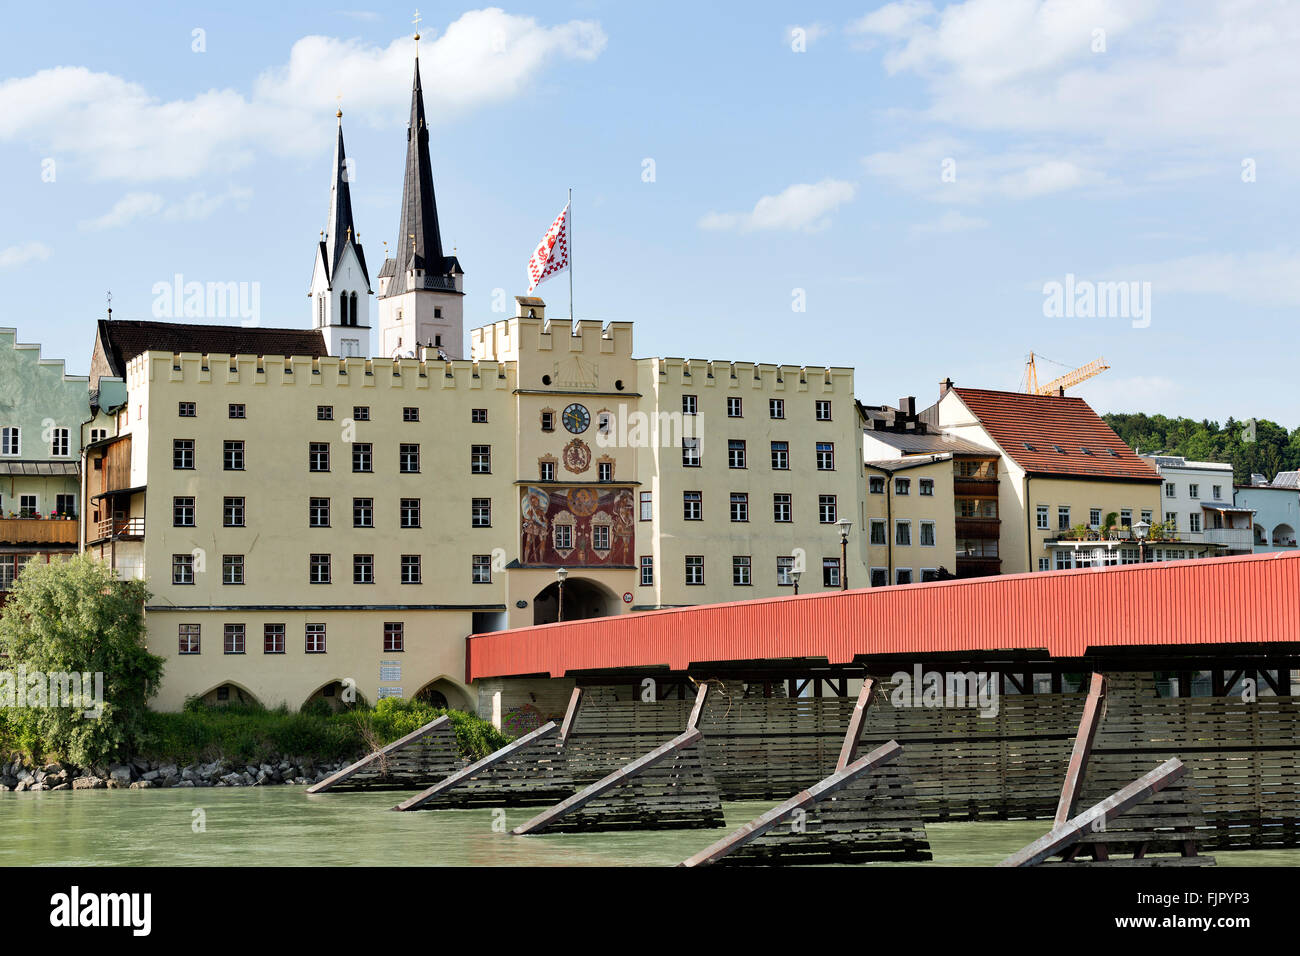 Brucktor an der Innbrücke, geschlossenen Torturm der mittelalterlichen Befestigungsanlage, Wasserburg am Inn, Bayern, Oberbayern Stockfoto